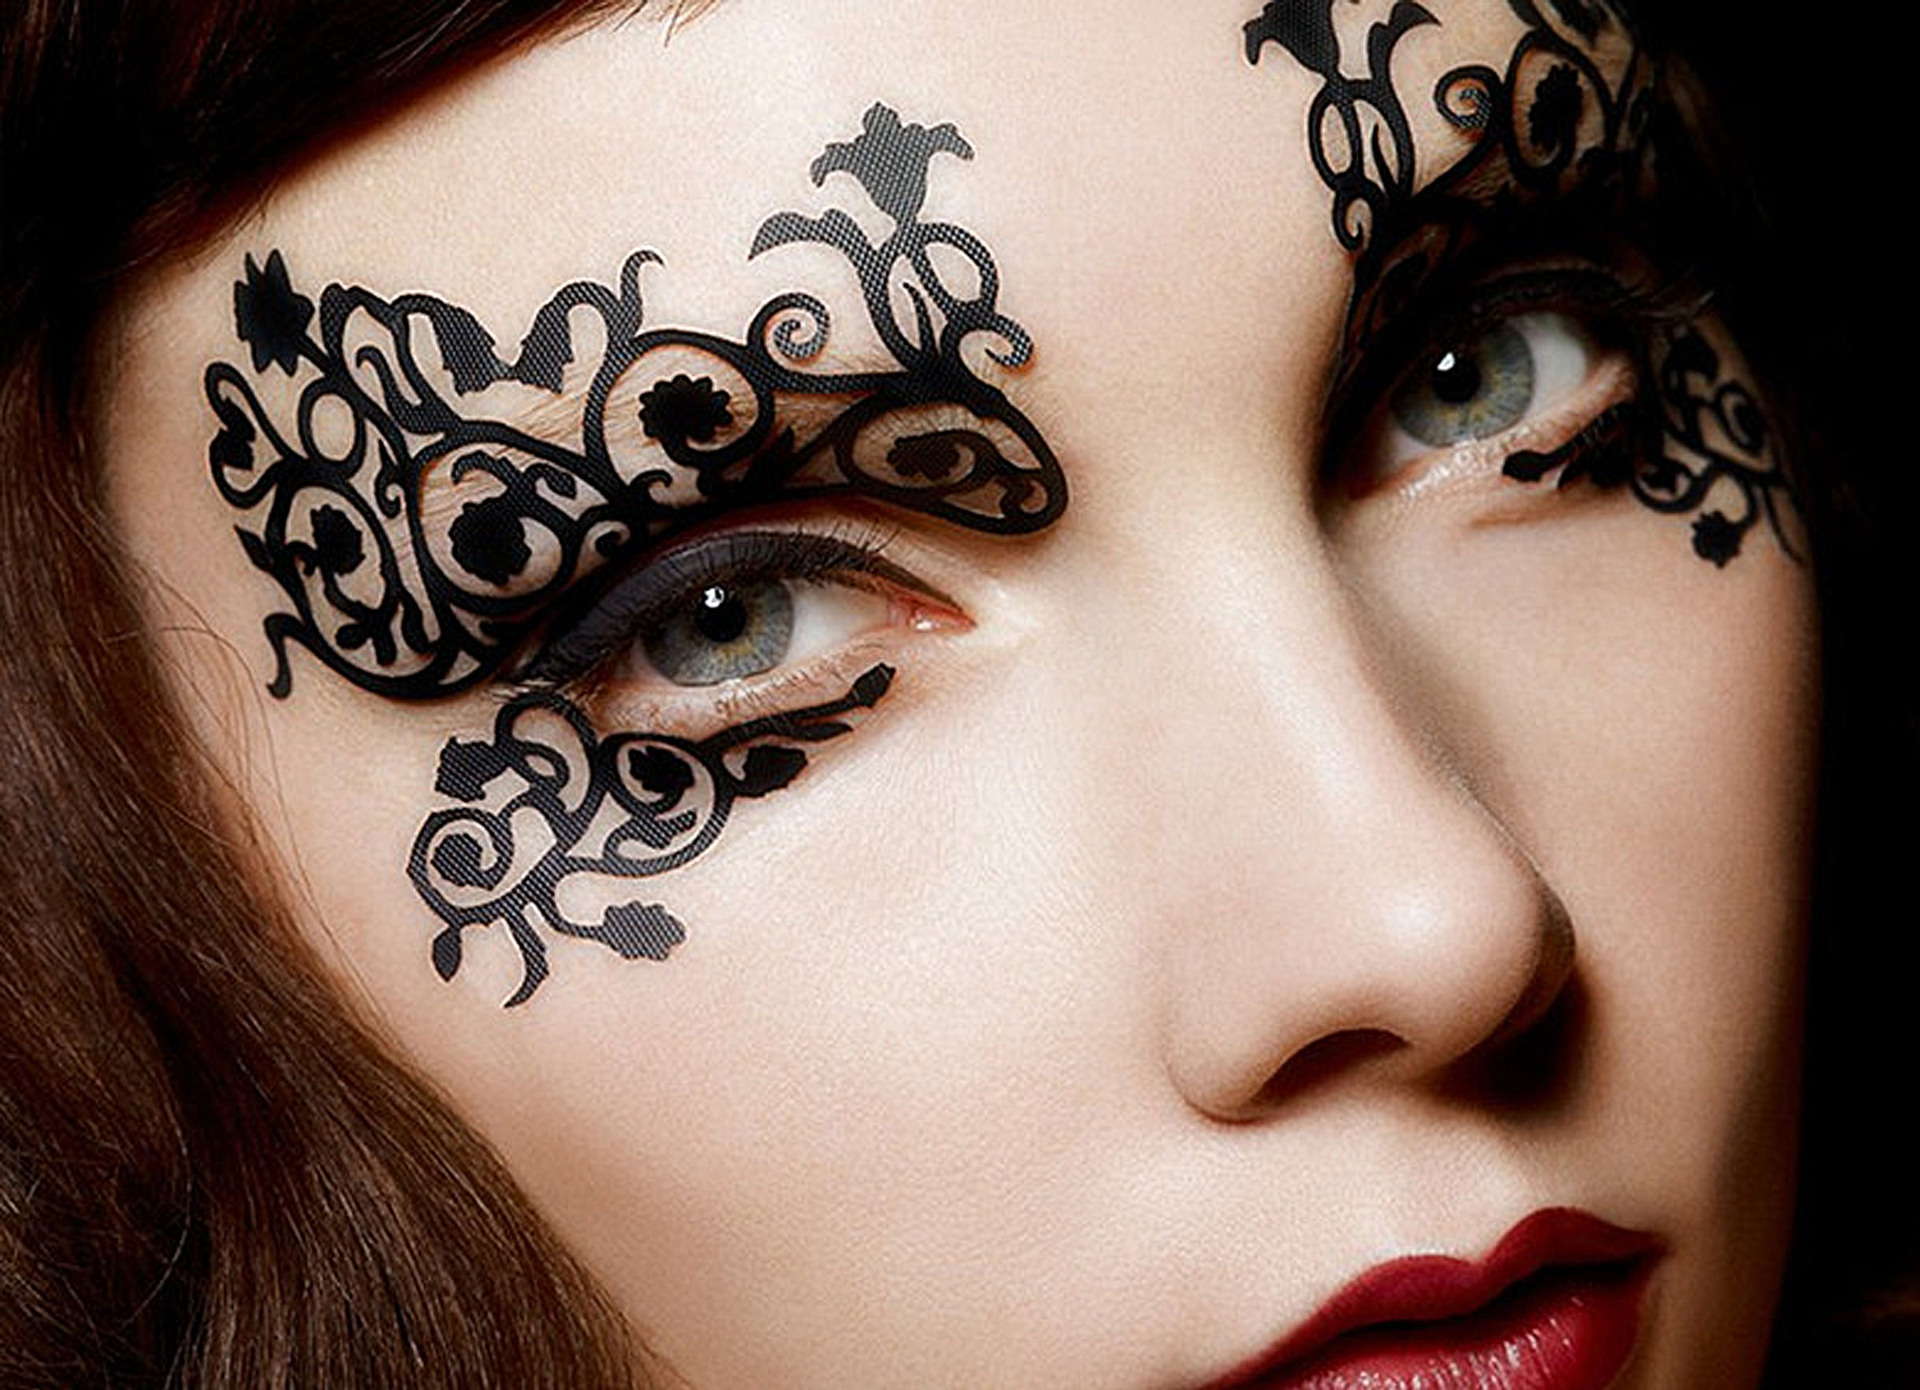 巴黎时尚创意新秀镂空艺术剪纸眼贴 艺术舞台妆用眼部彩绘贴纸